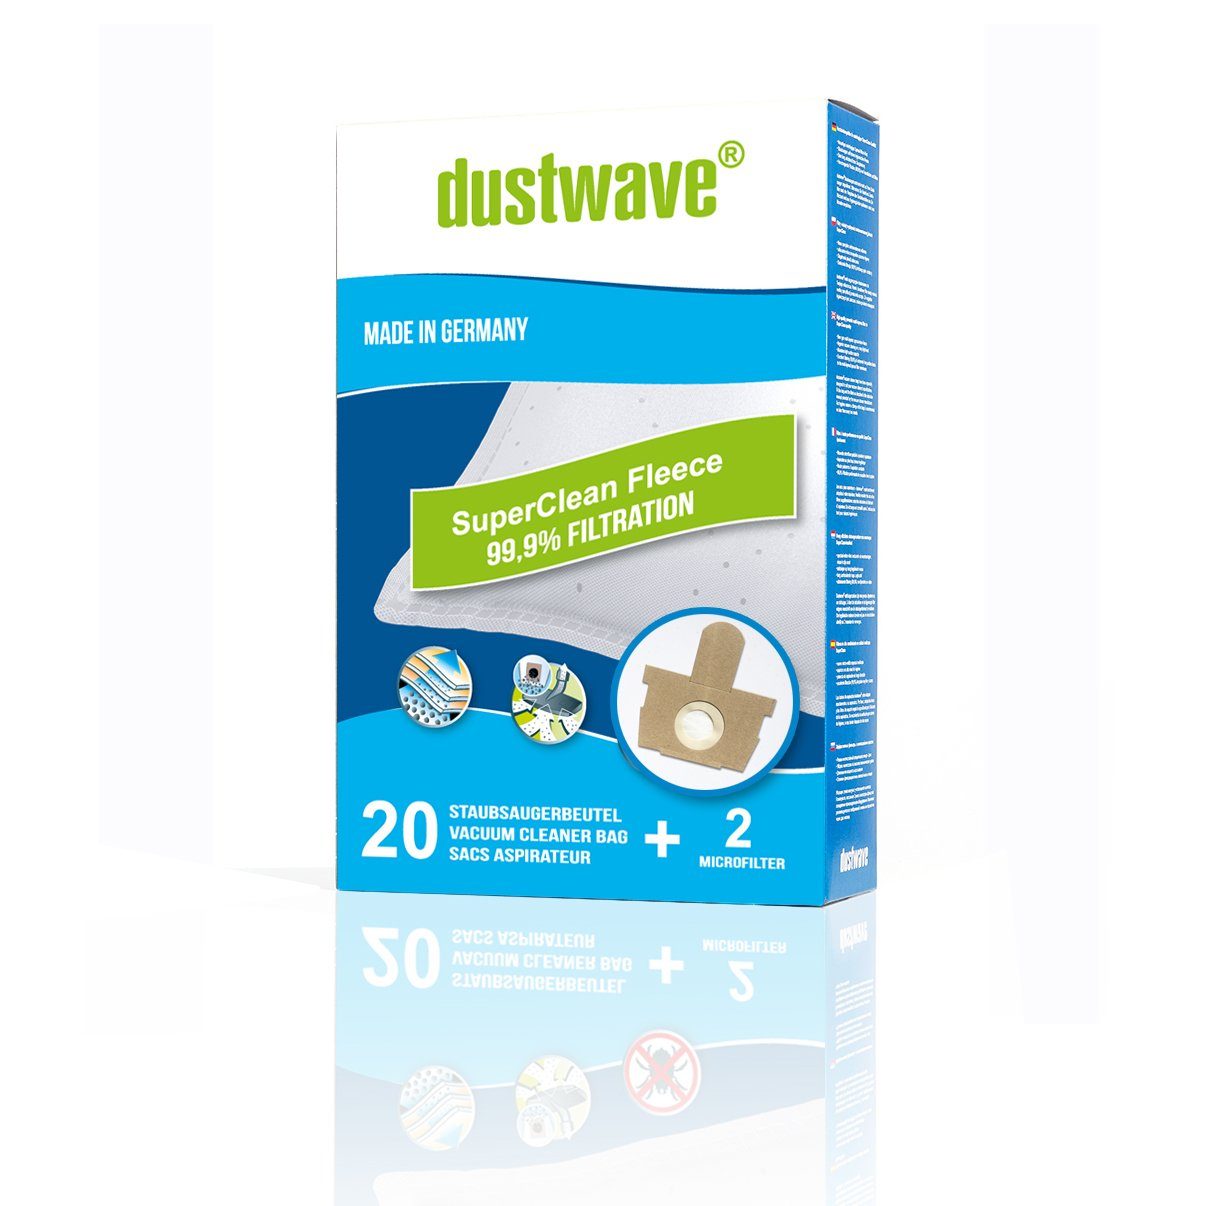 Dustwave Staubsaugerbeutel Megapack, passend für AmazonBasics R21, 20 St., Megapack, 20 Staubsaugerbeutel + 2 Hepa-Filter (ca. 15x15cm - zuschneidbar) AmazonBasics R21 - Premium